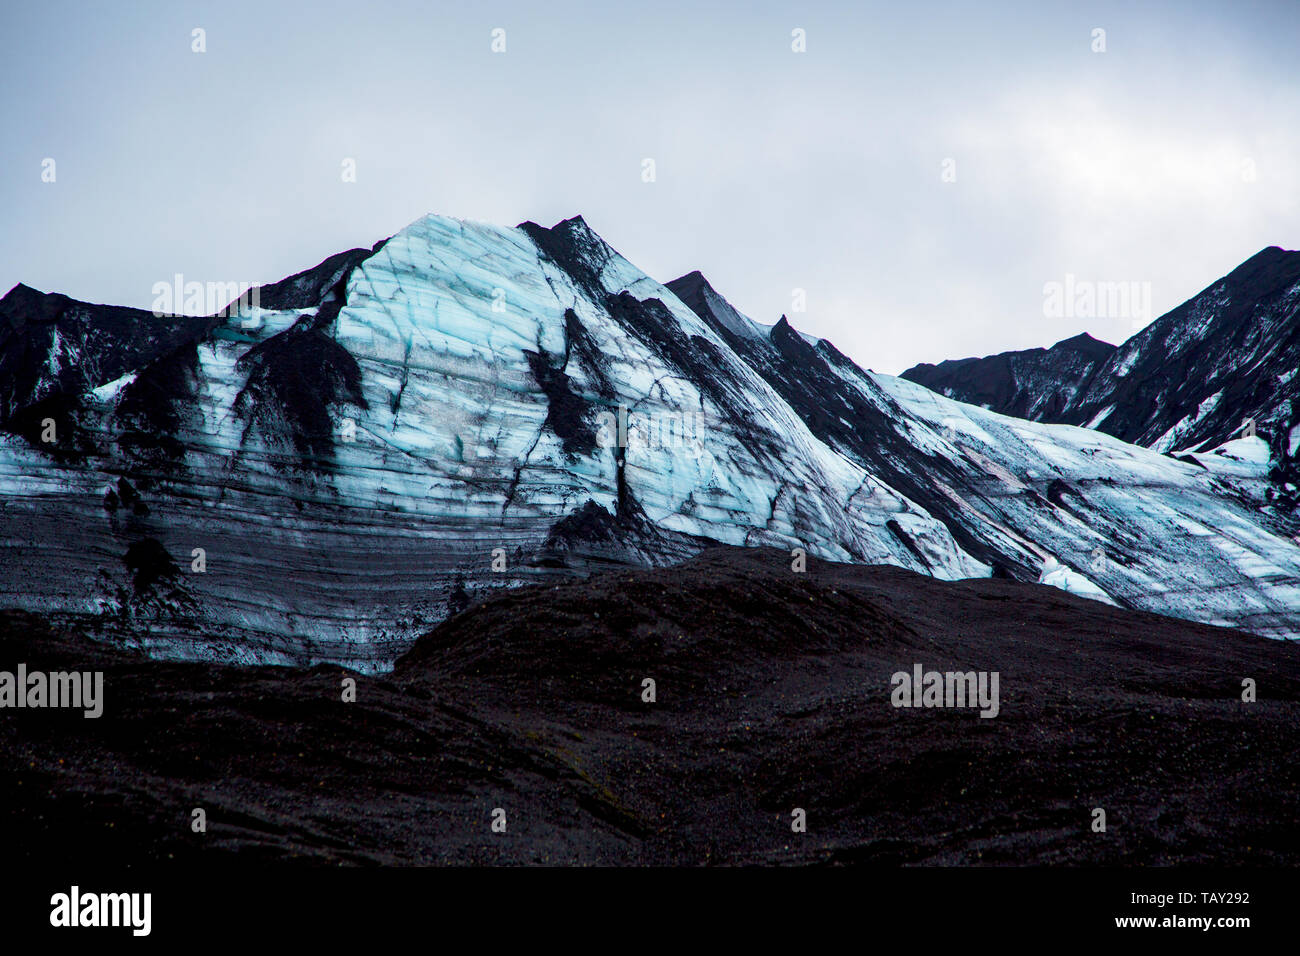 Impressionante blu-nero parete del ghiacciaio con sabbia di cenere in primo piano nel cielo grigio Foto Stock